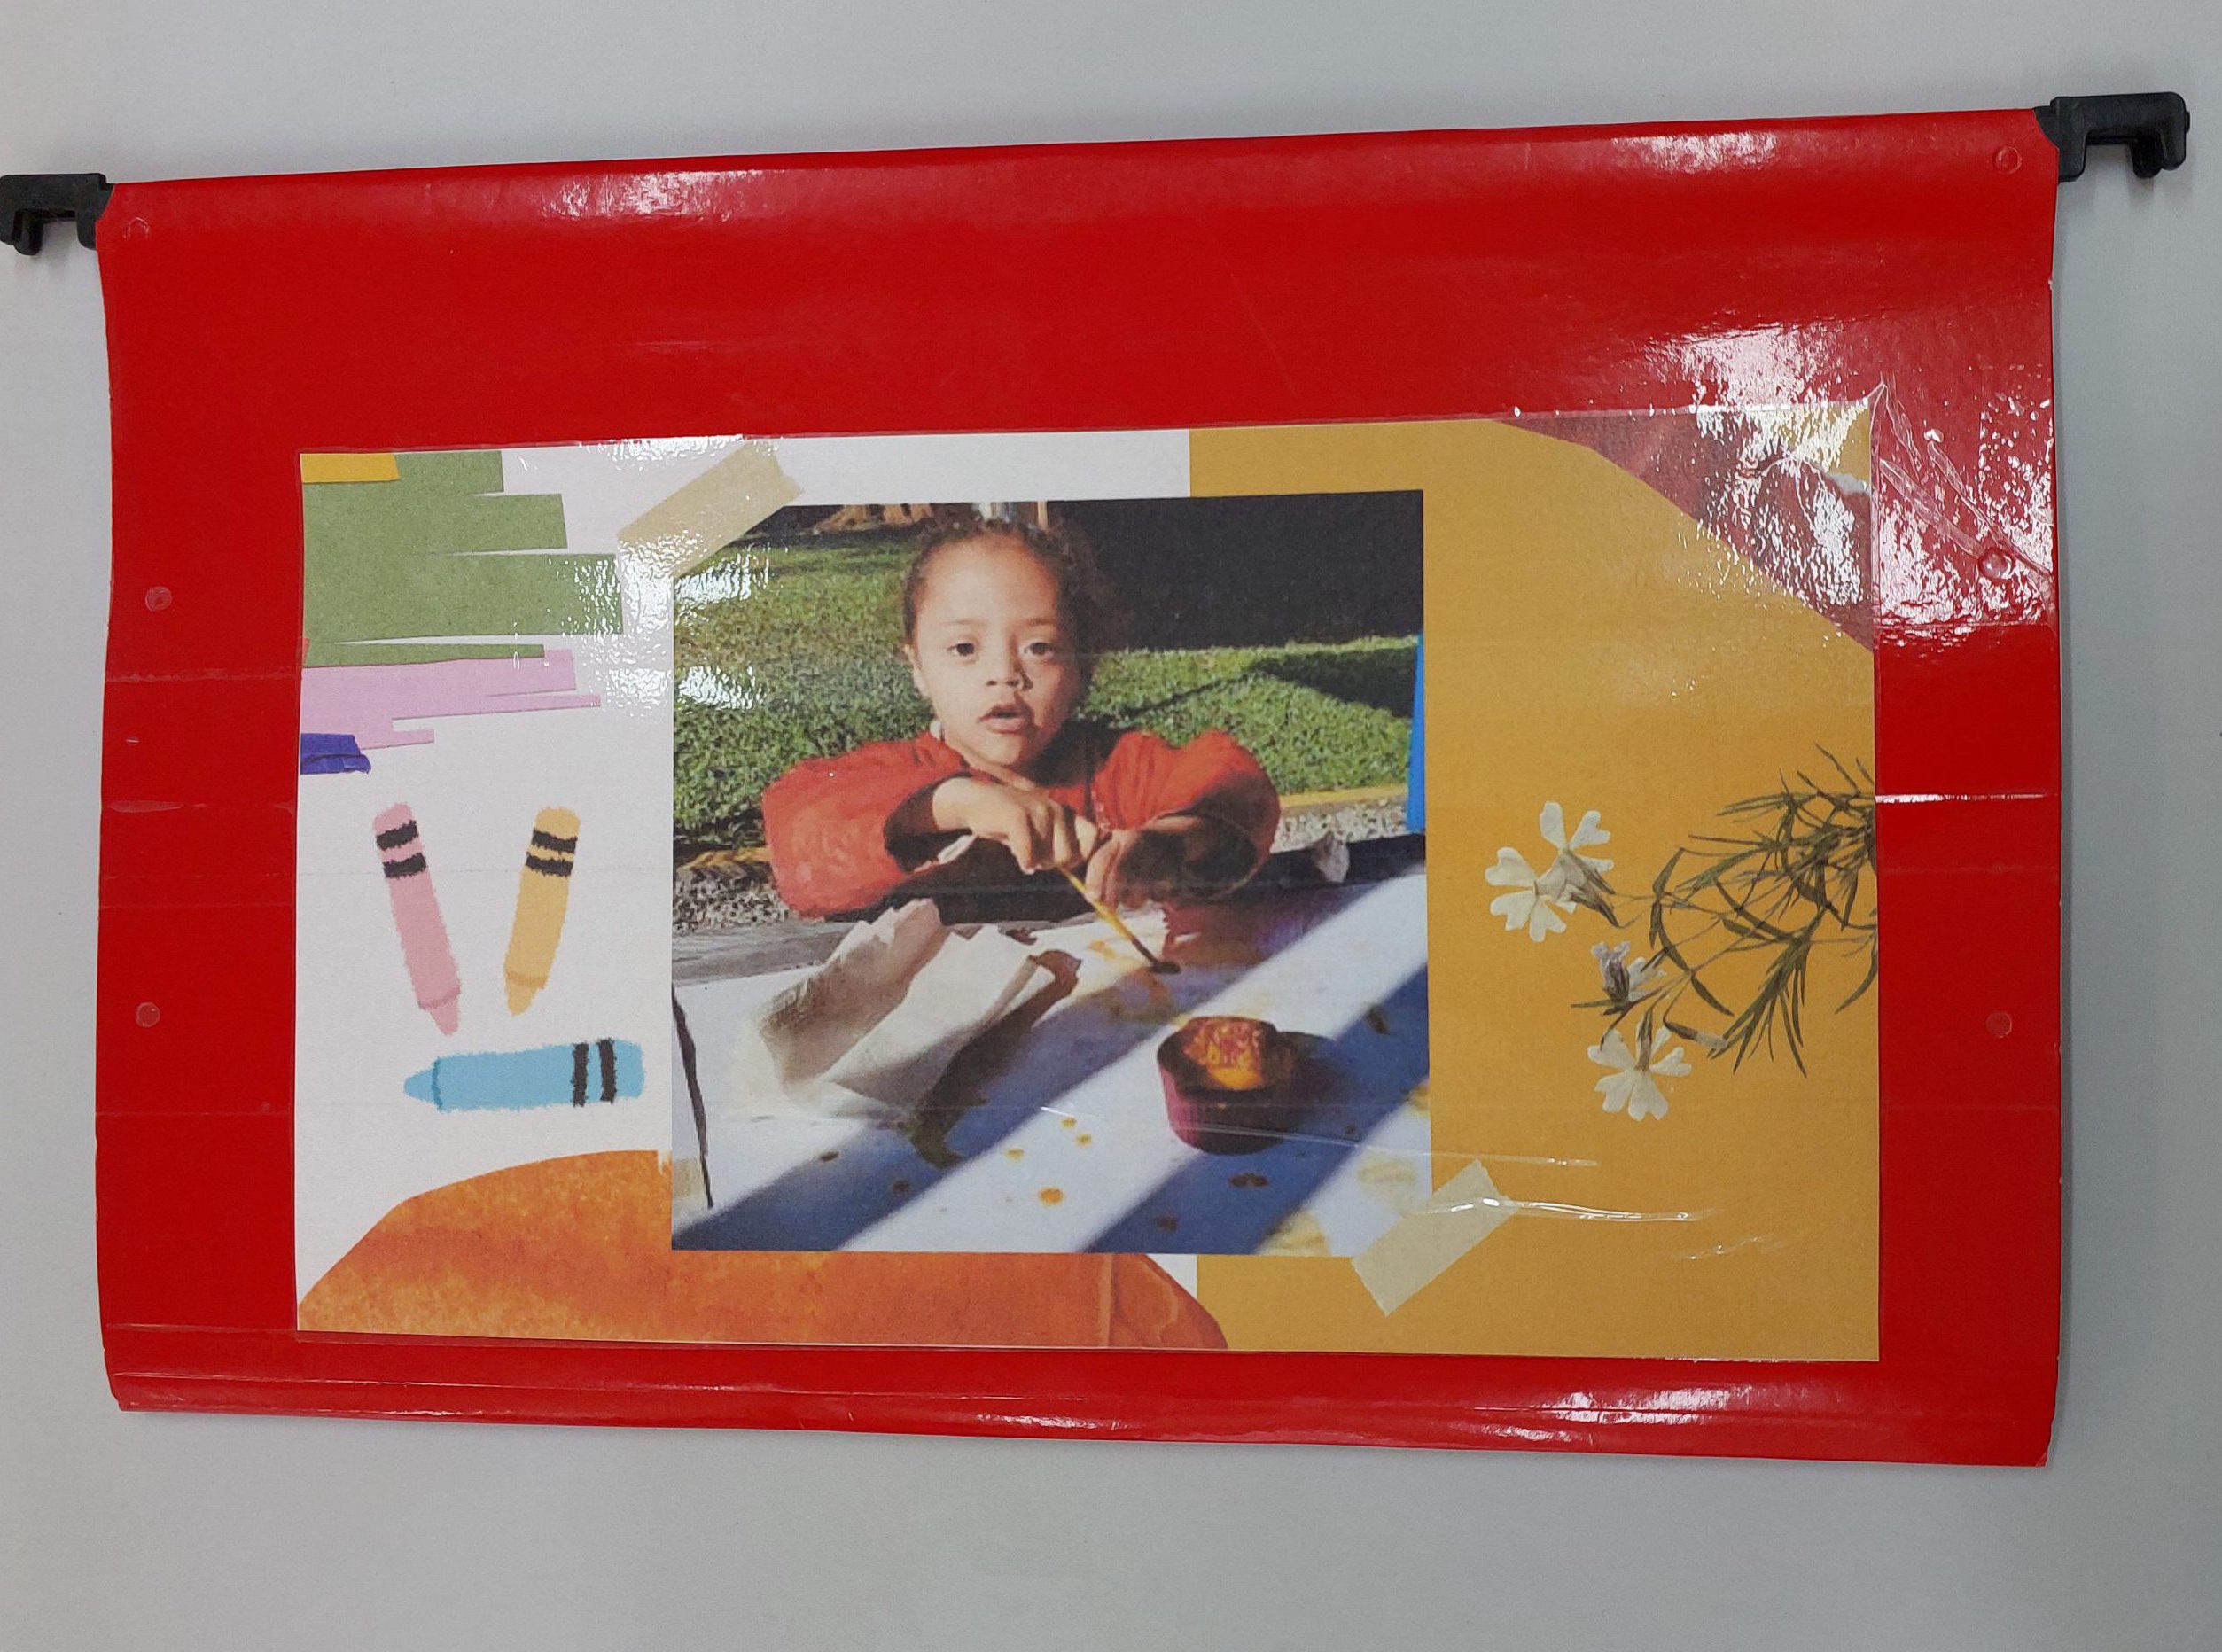 Pasta vermelha com foto de uma menina que está com pincel pintando em um papel sobre a mesa. Ao lado, o desenho de três lápis coloridos.